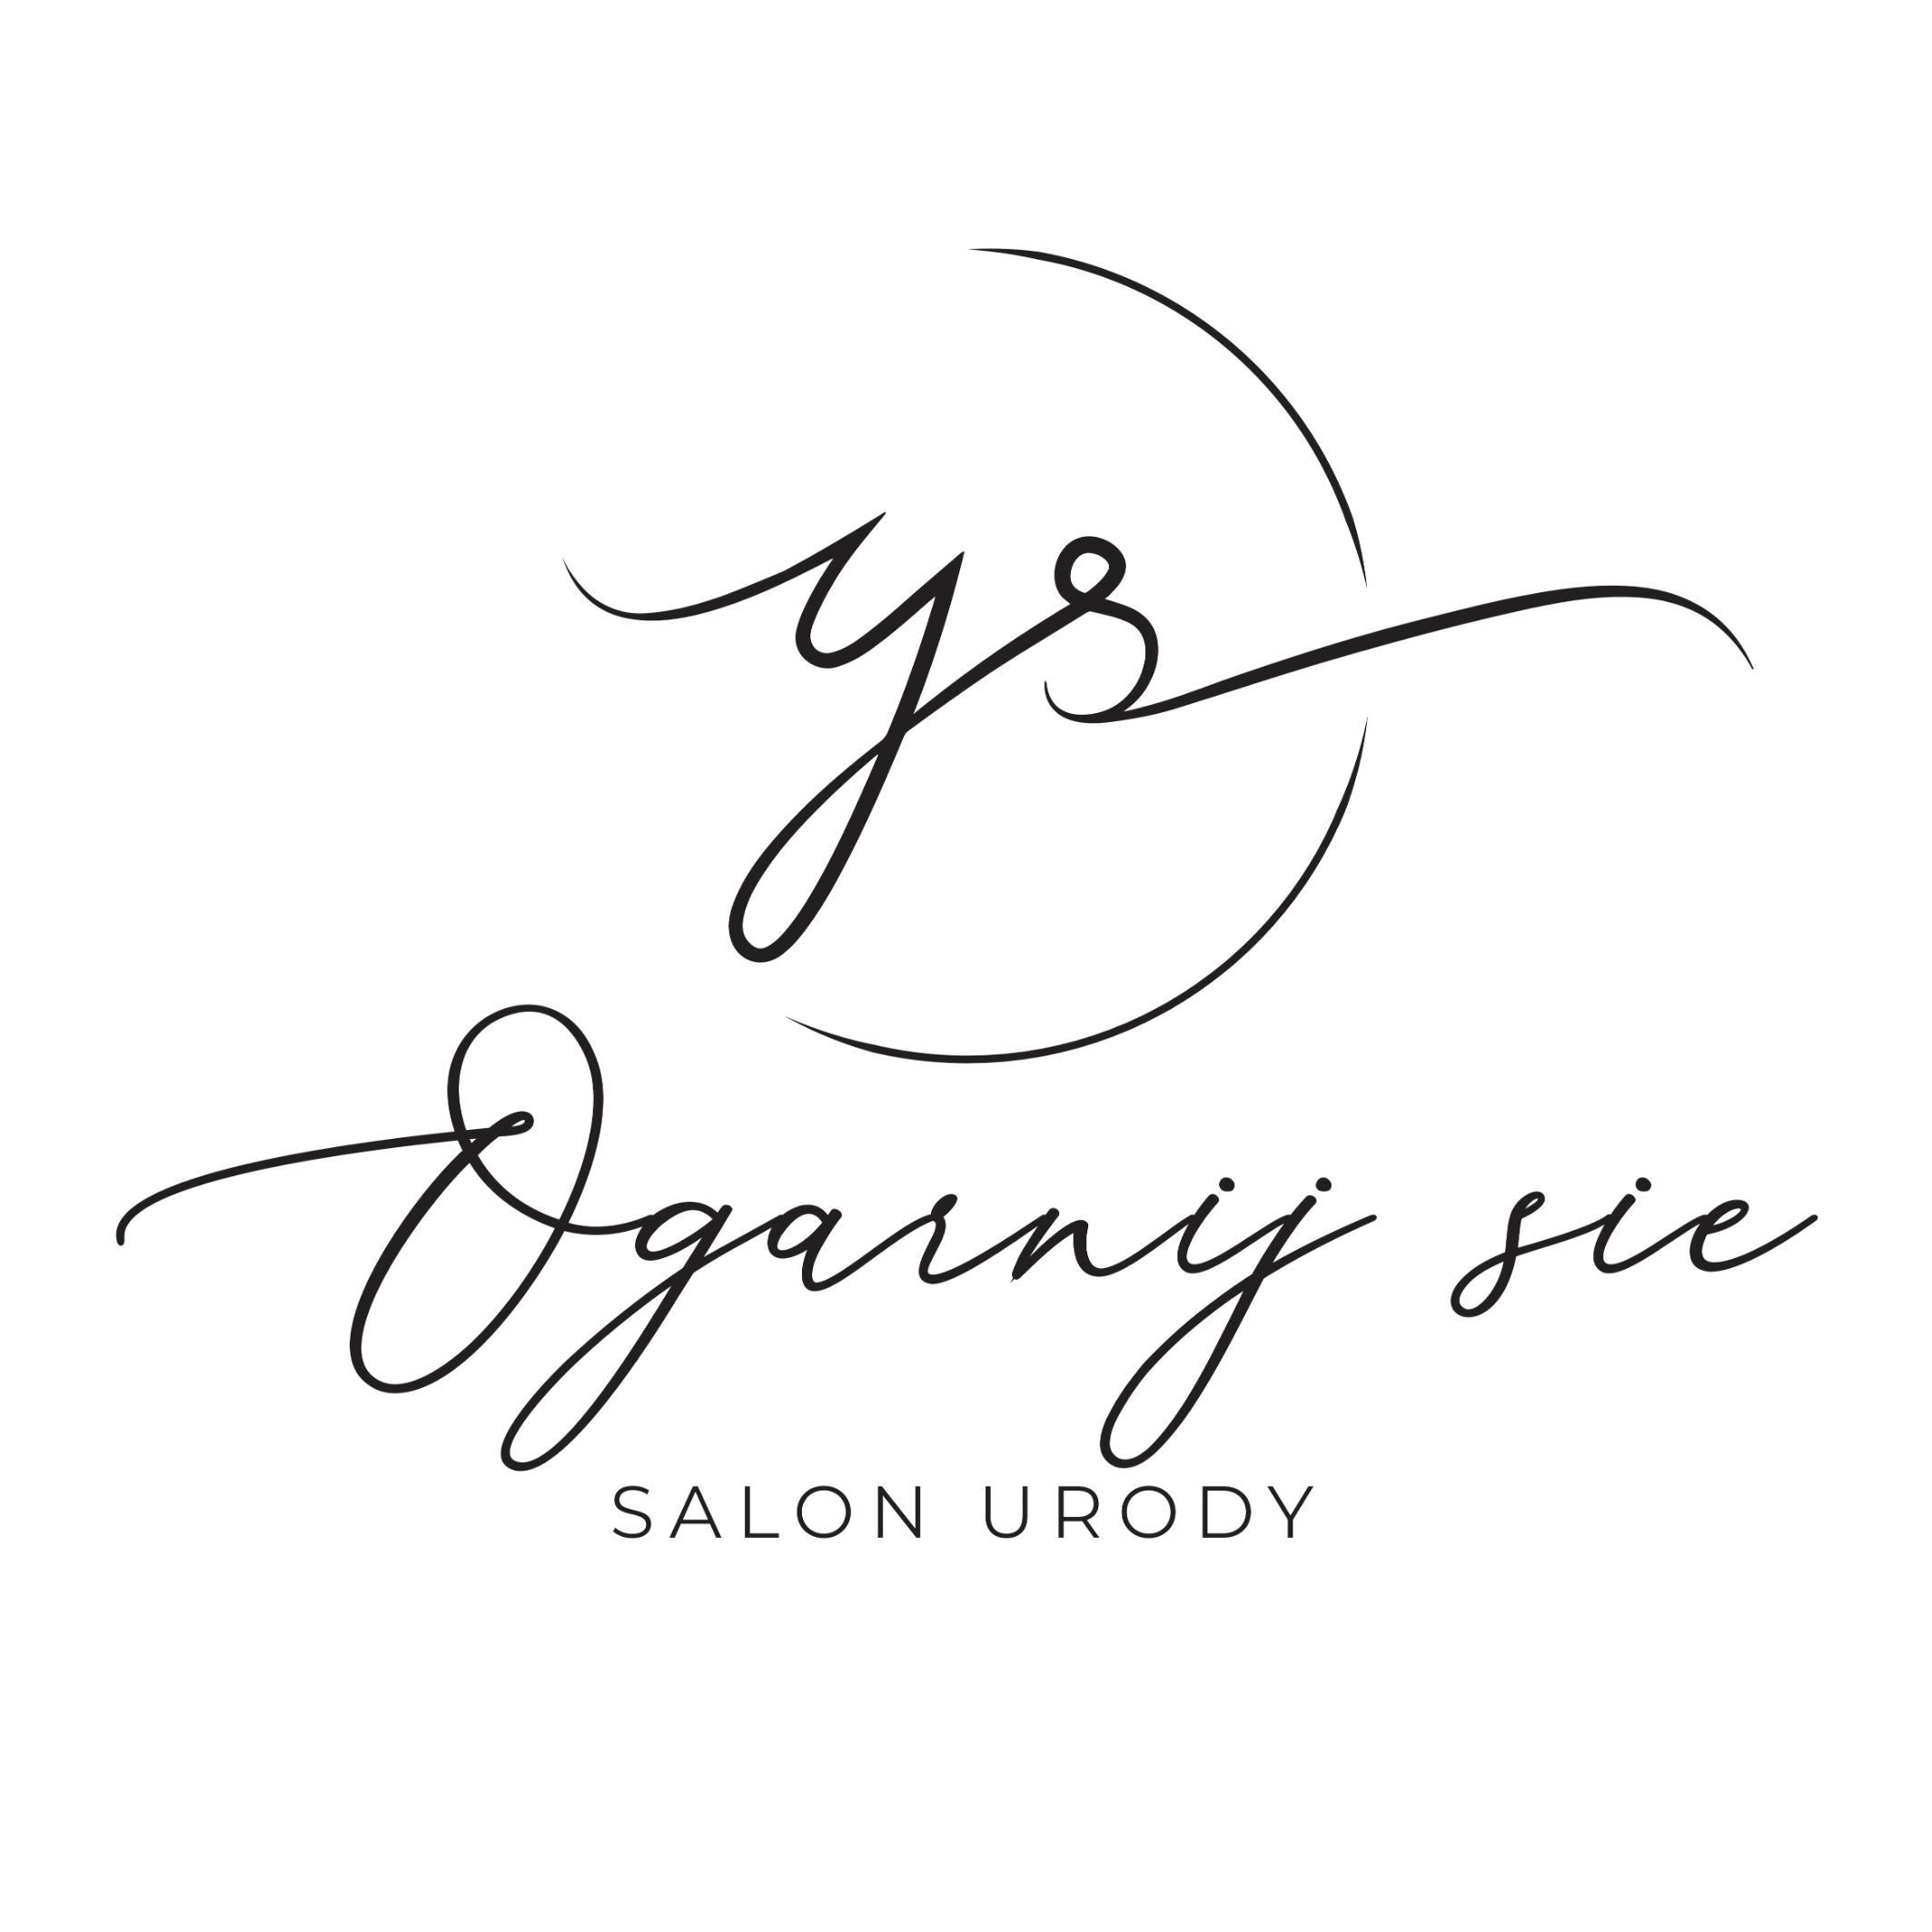 Salon Urody "Ogarnij się", Dworcowa 70, 85-010, Bydgoszcz